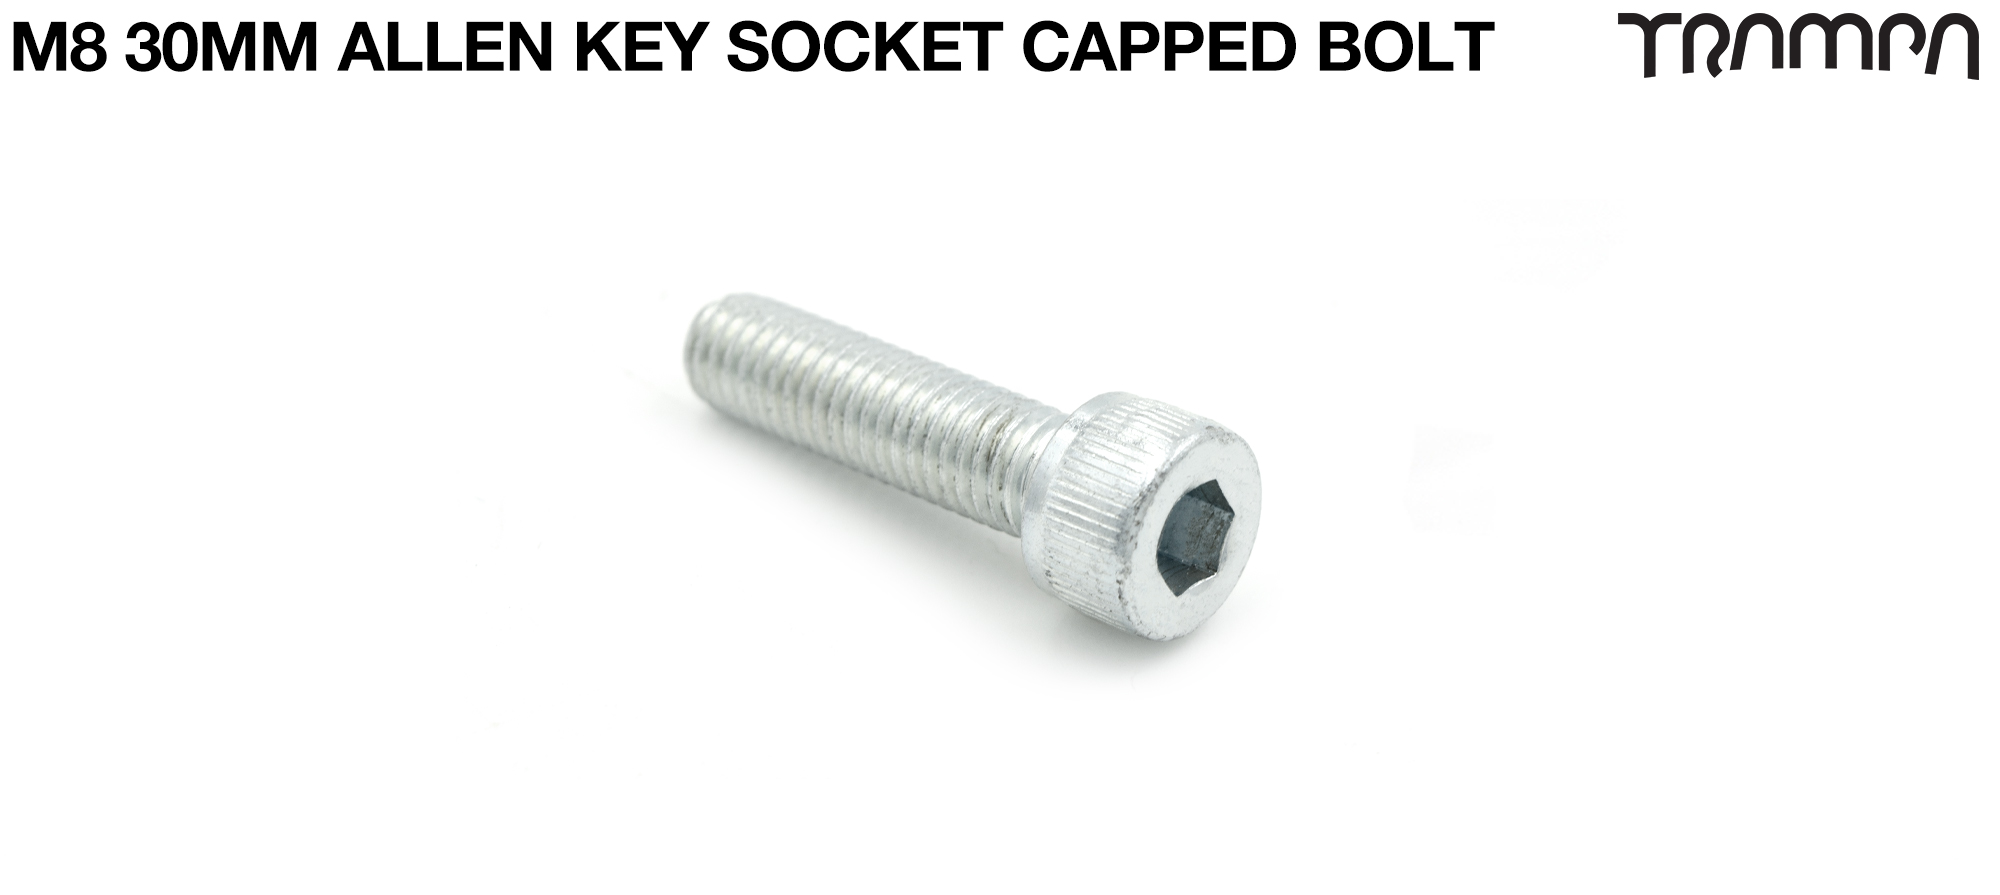 M8 x 30mm Socket Capped Allen-Key Bolt for primo hub - Marine Grade Stainless steel 